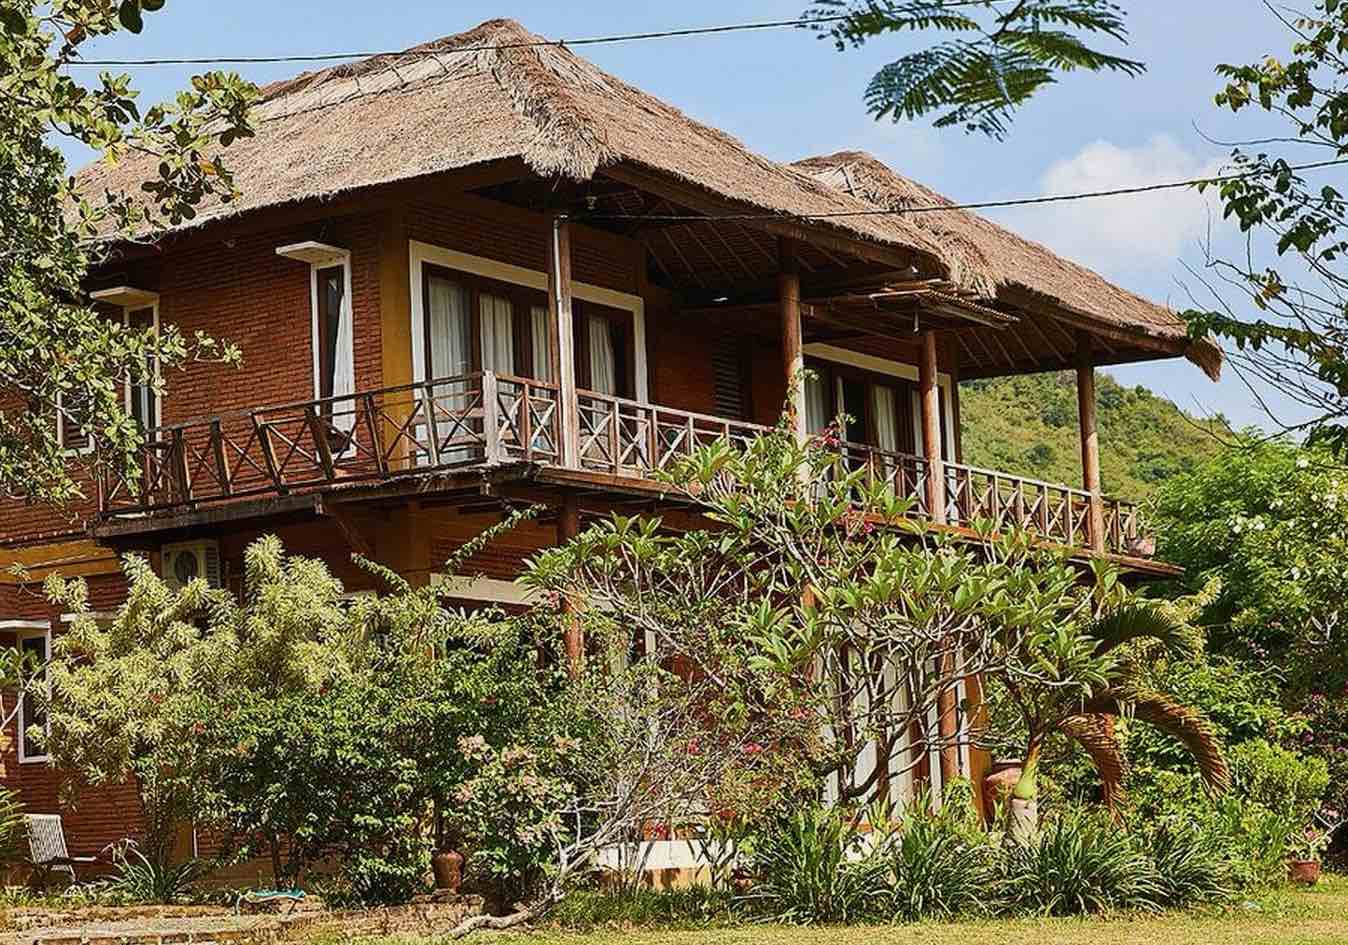 Villa Paopao Accommodarion South Lombok